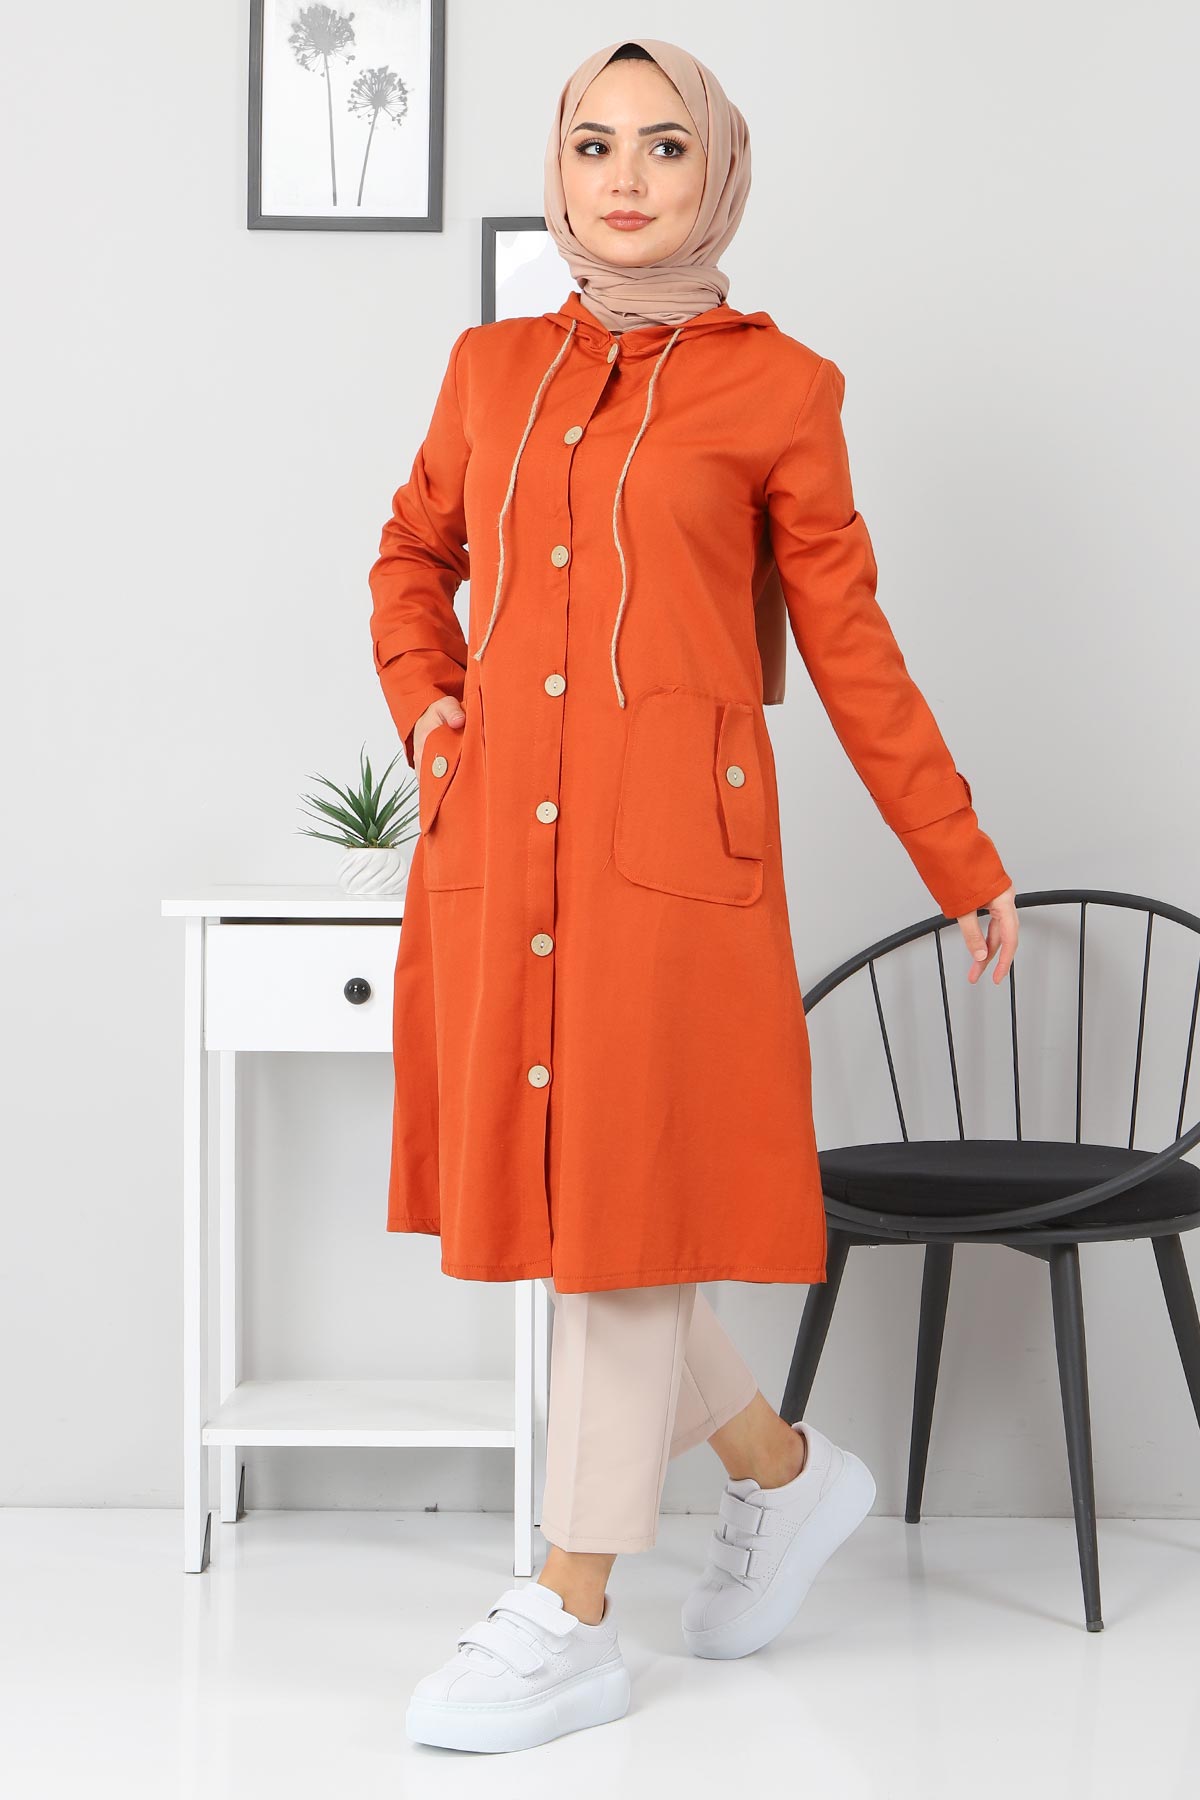 Image of Women's Hooded Pocket Orange Jacket